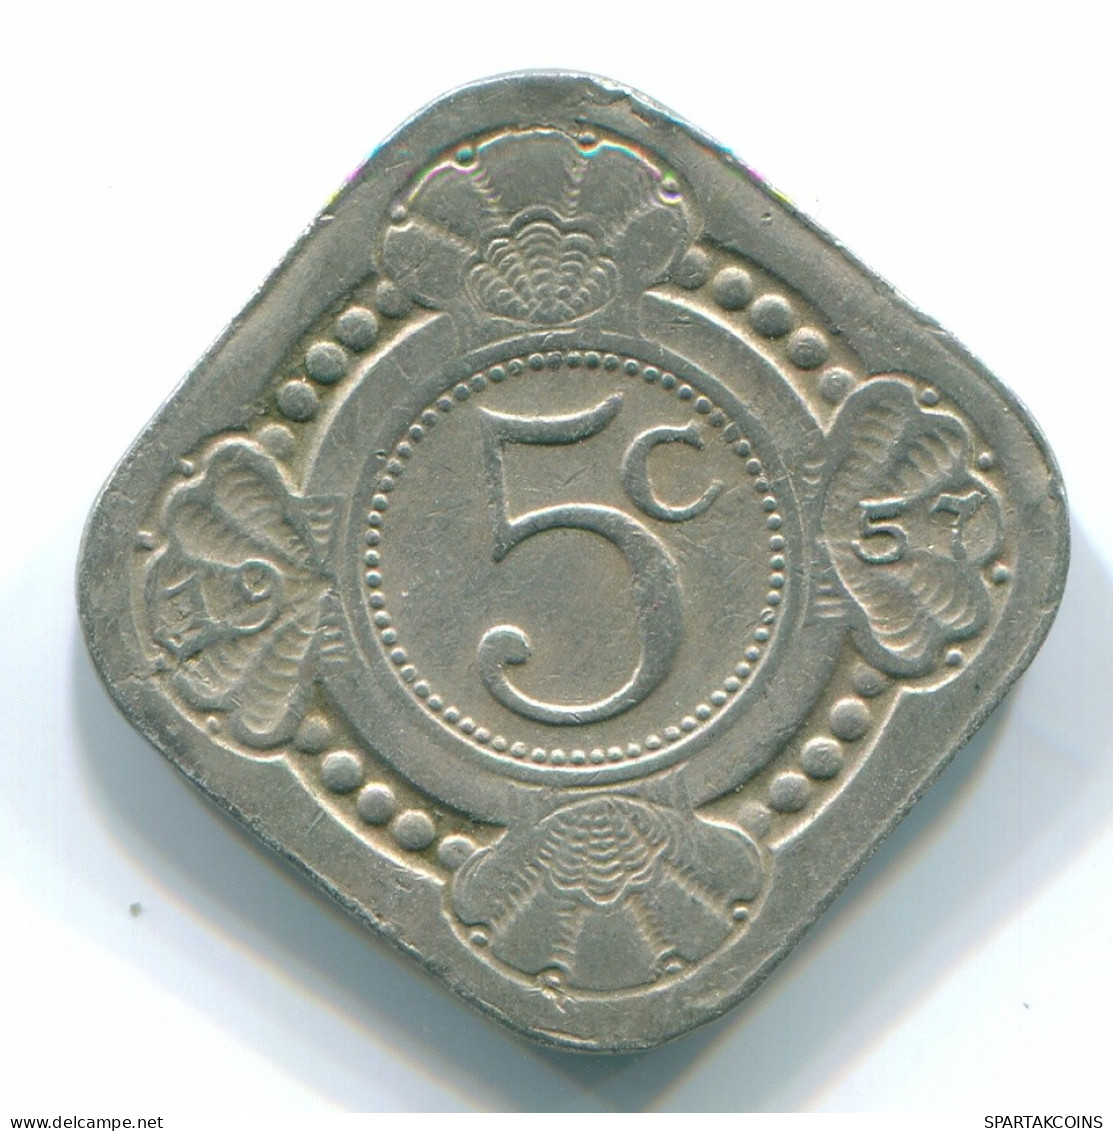 5 CENTS 1957 NETHERLANDS ANTILLES Nickel Colonial Coin #S12403.U.A - Antillas Neerlandesas